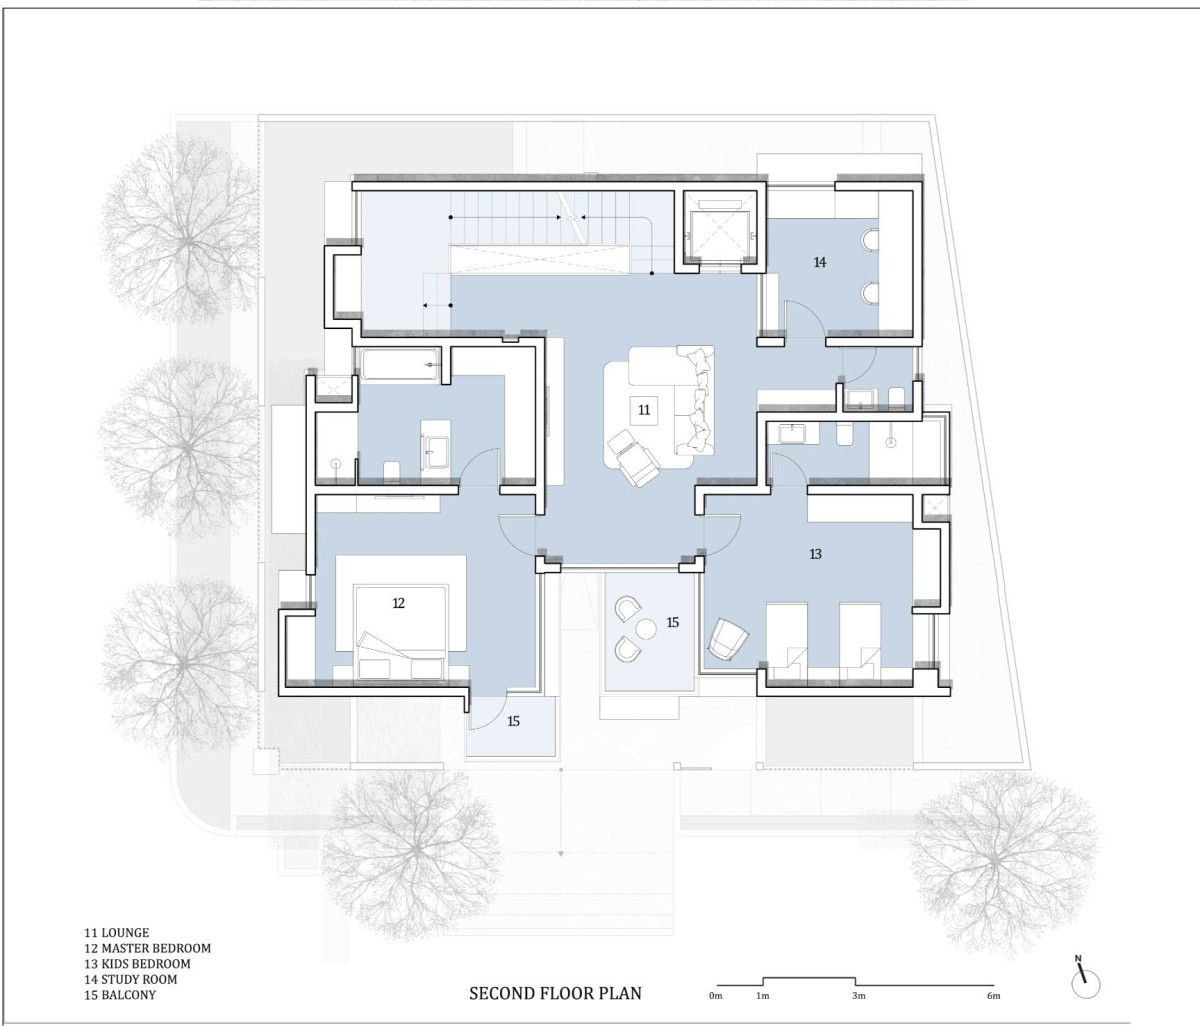 Second floor plan of RL Residence by SDeG